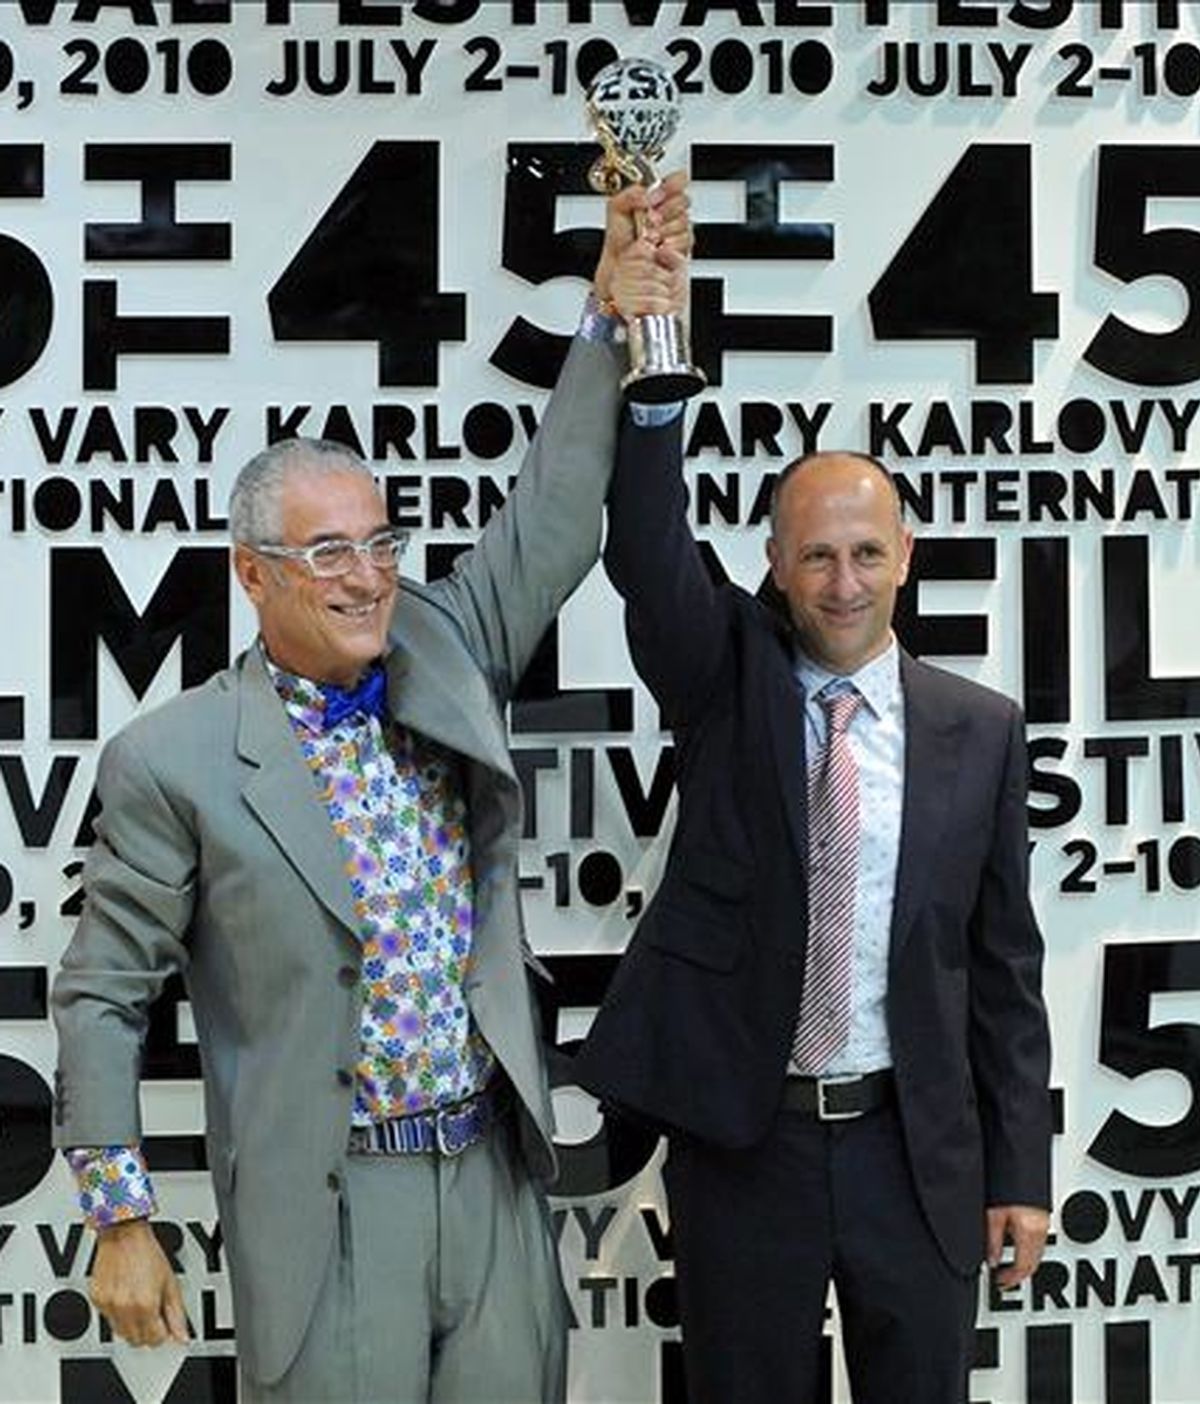 El director español Agustí Vila (izq) y el productor Luis Minarro sostienen el Globo de Cristal que han recibido por la película "La red del mosquito" en el Festival Internacional de Cine de Karlovy Vary, República Checa, hoy sábado 10 de julio. EFE